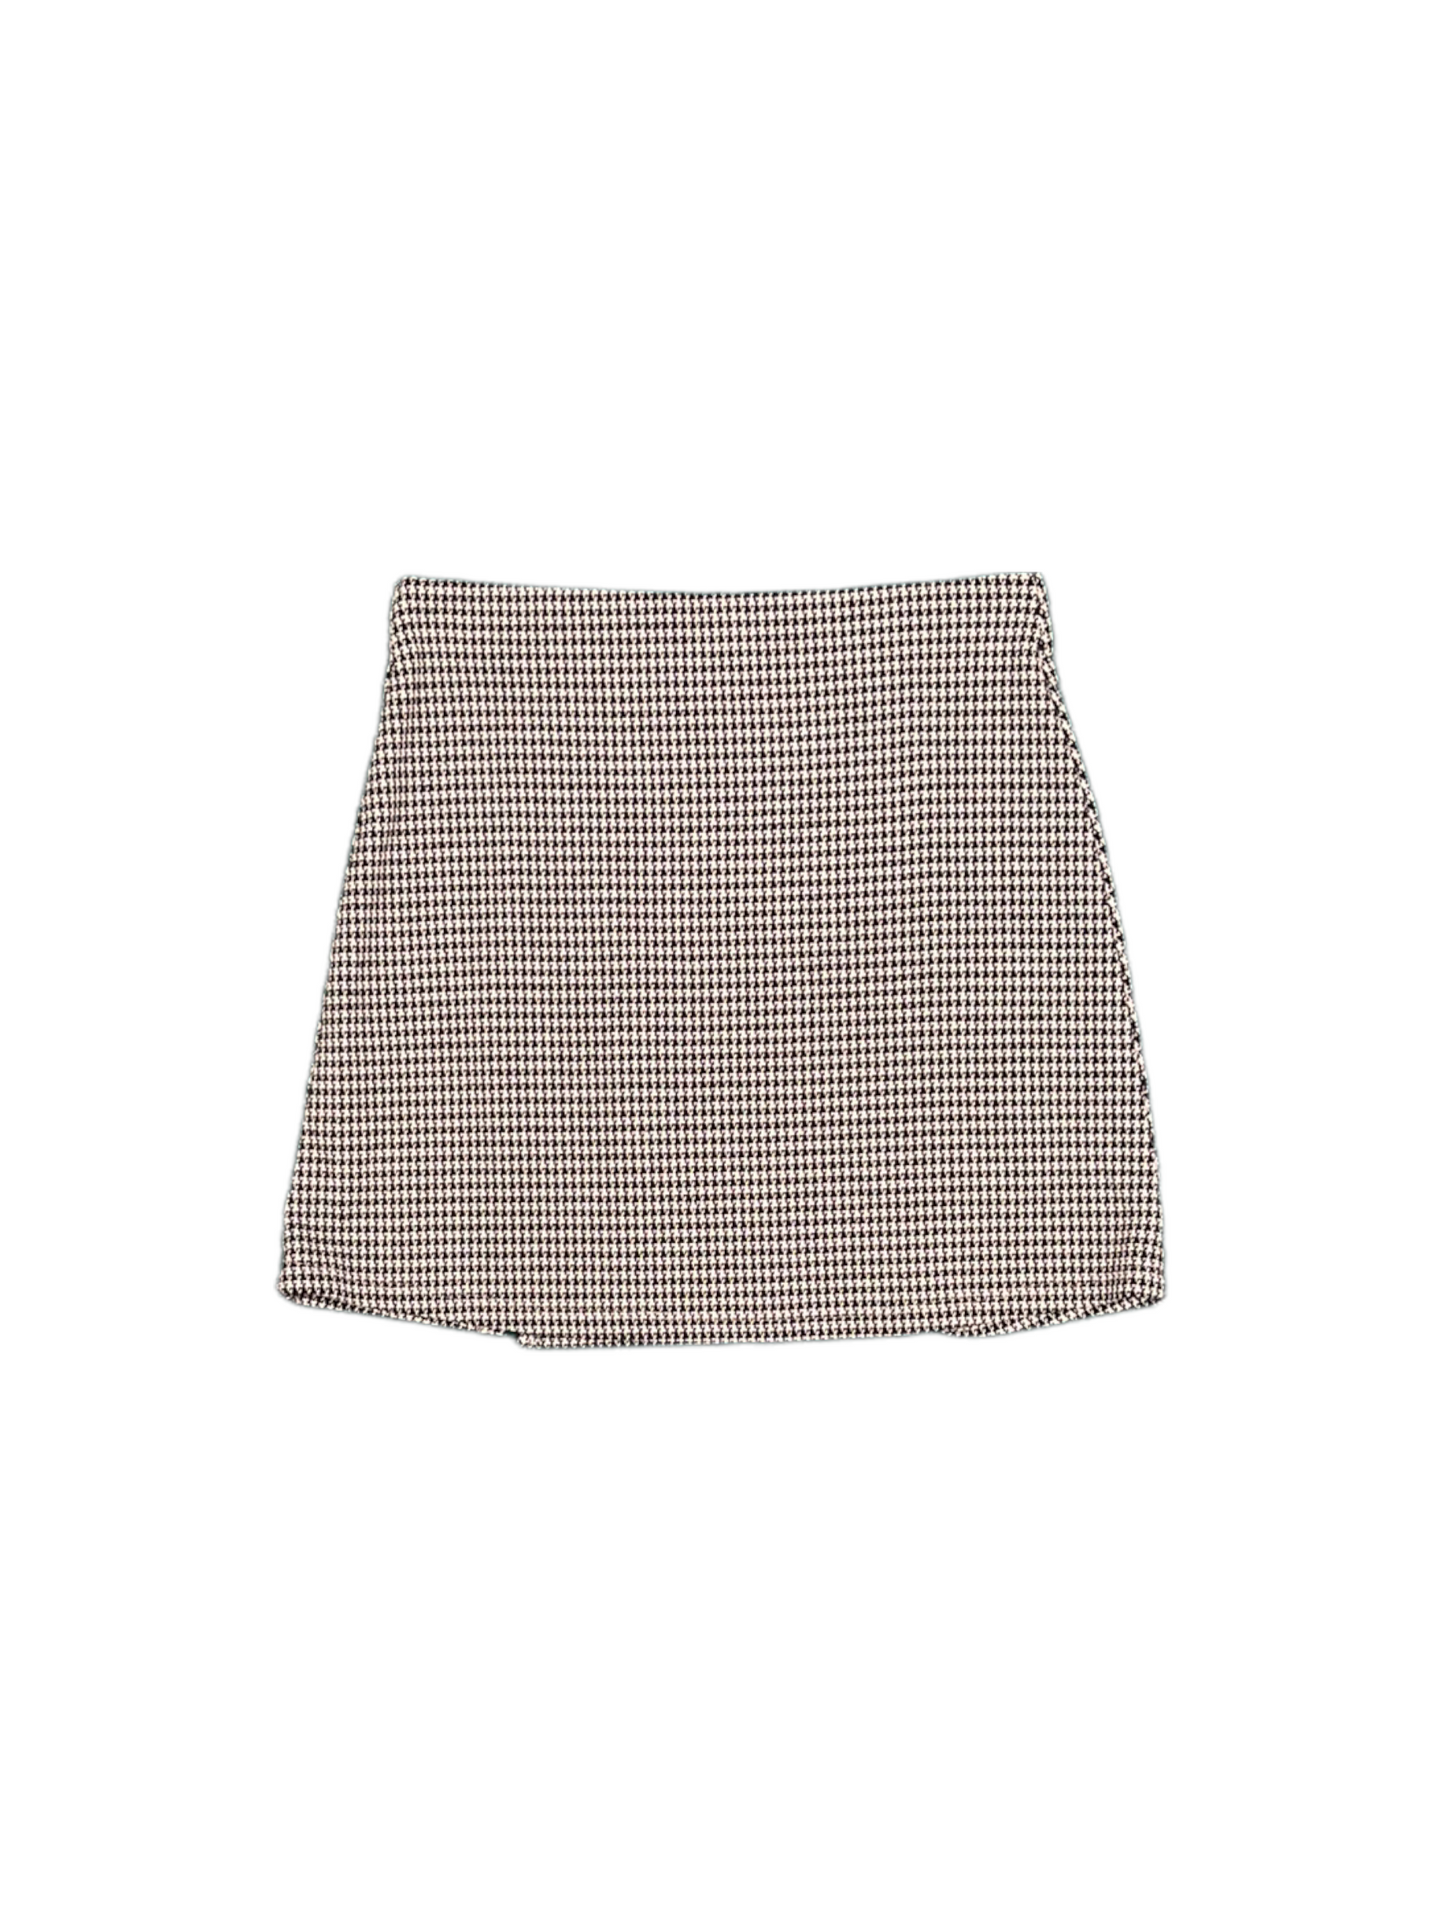 Womens Patterened Skirt - UK 10